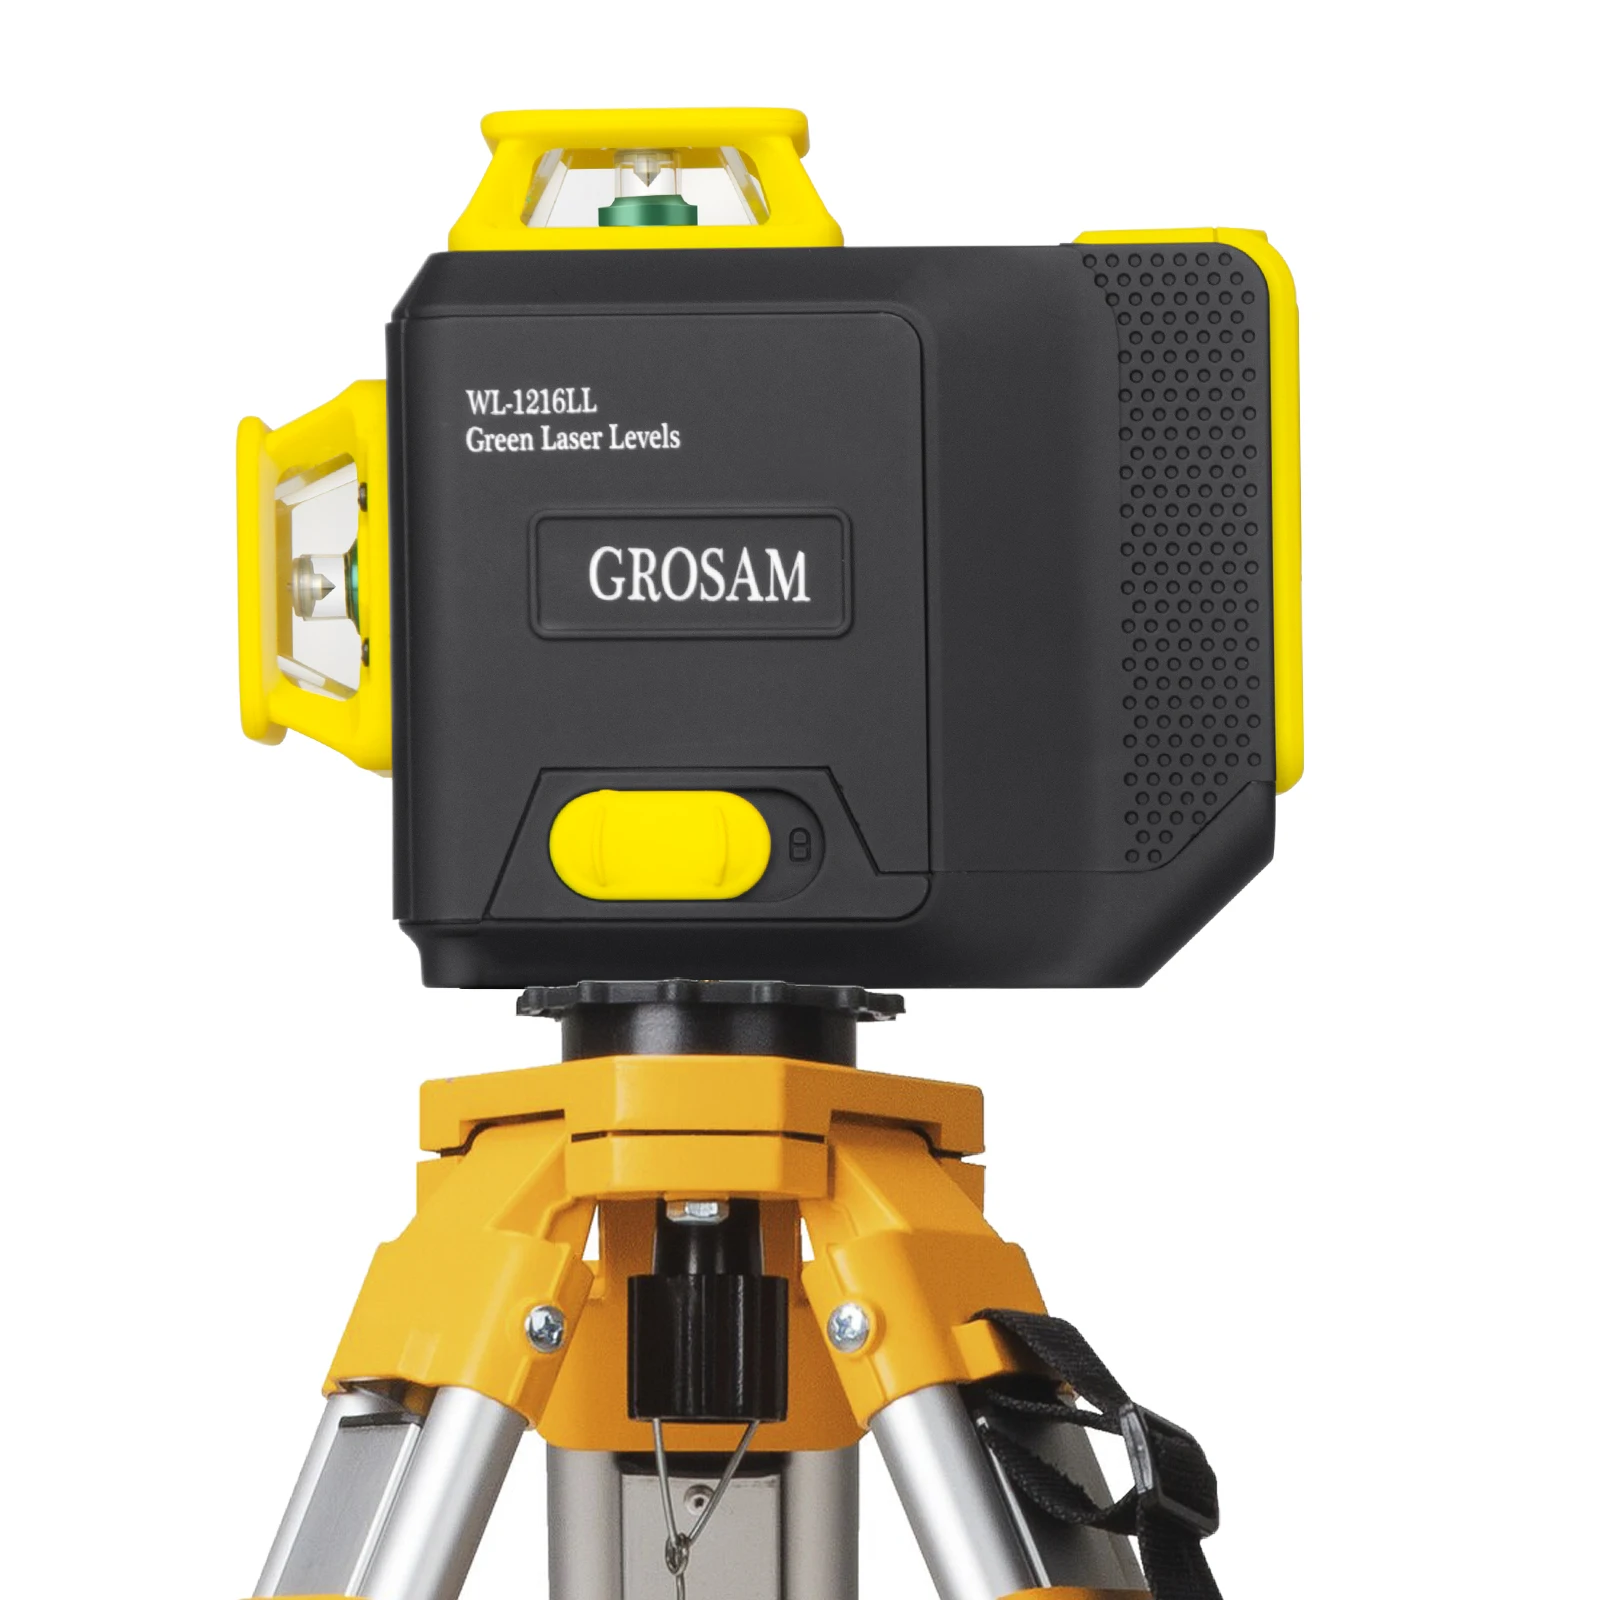 Лазерный уровень вертикальный. Лазерный уровень Grosam 4d. Grosam 360 лазерный уровень 16 линий 4d. Grosam лазерный уровень характеристики. Grosam WL-12.